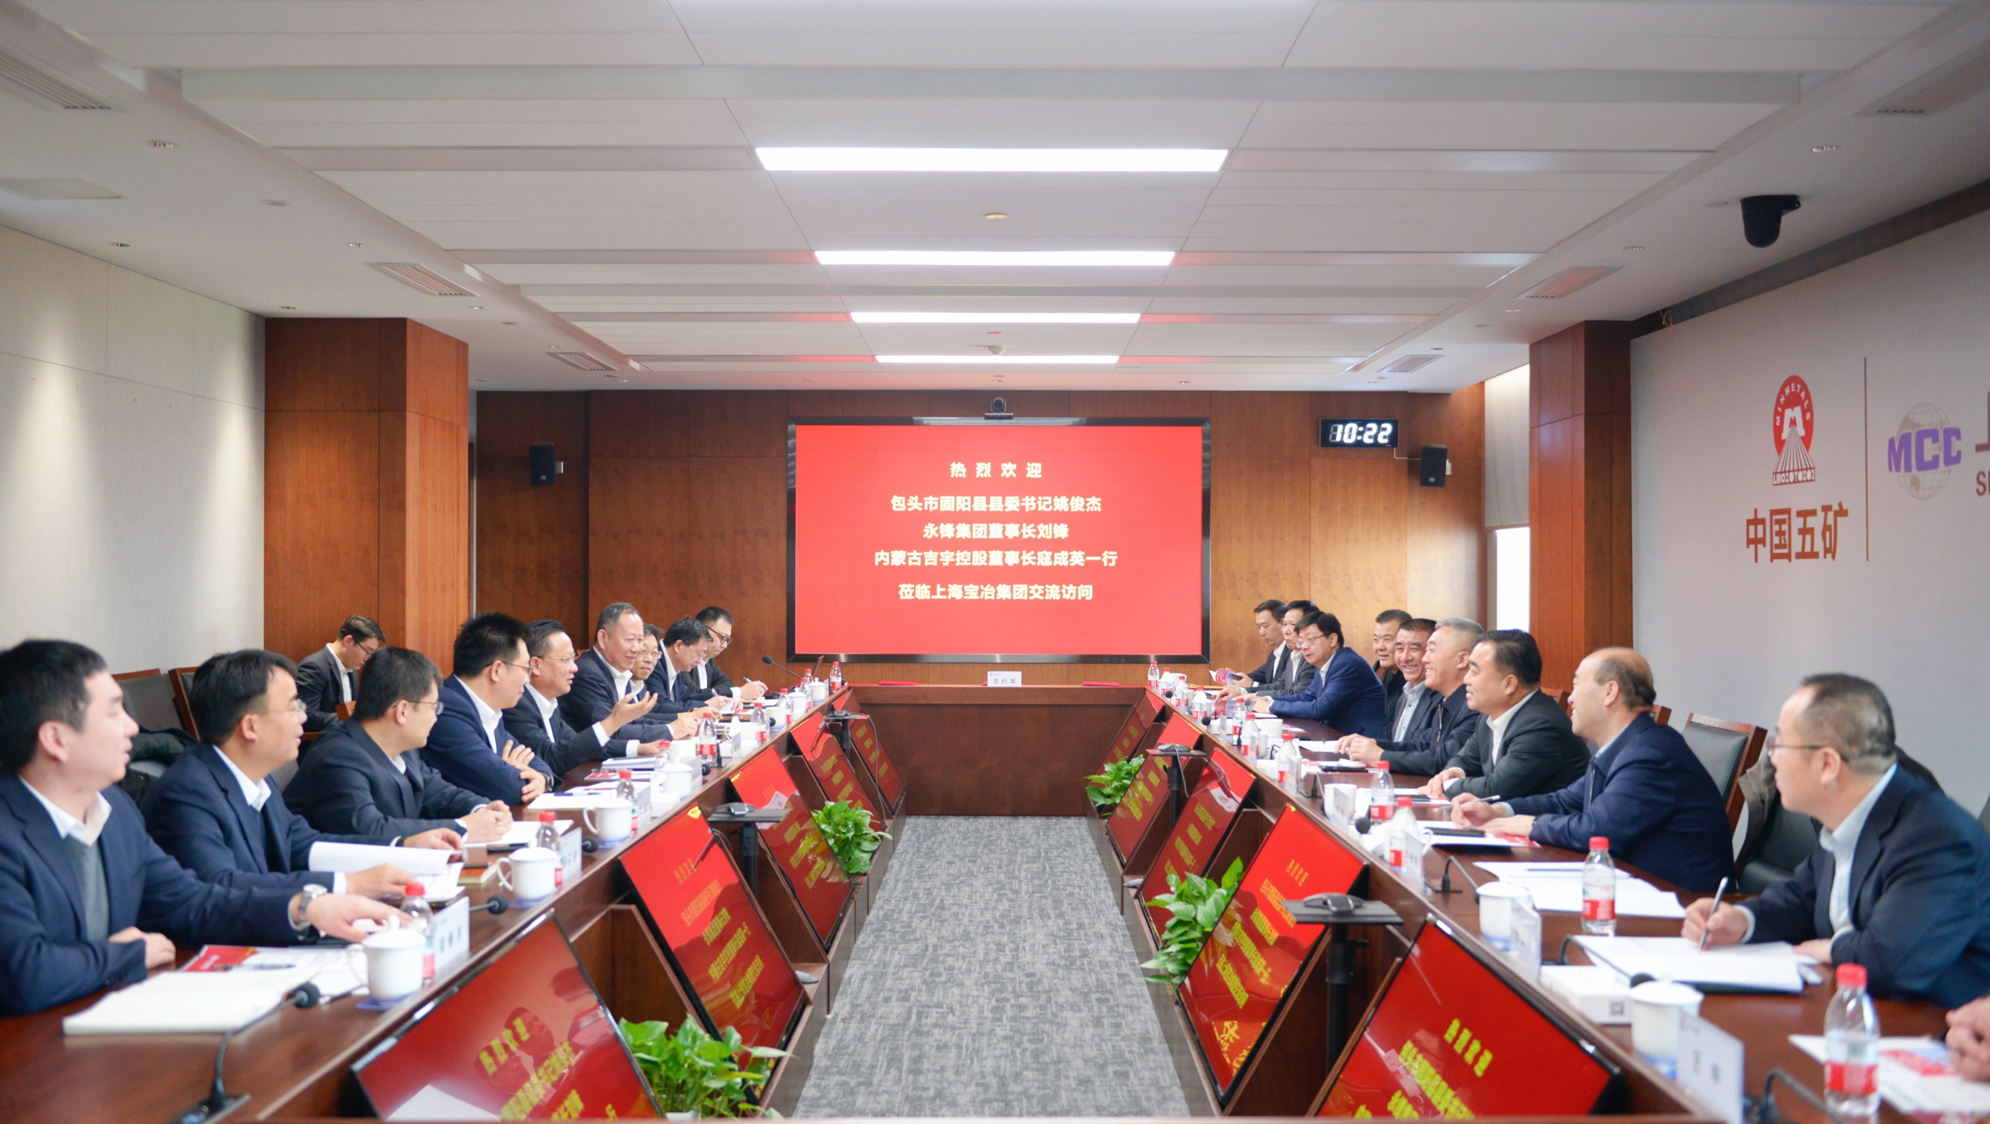 上海百乐博与永锋集团、内蒙古吉宇控股签署战略相助协议